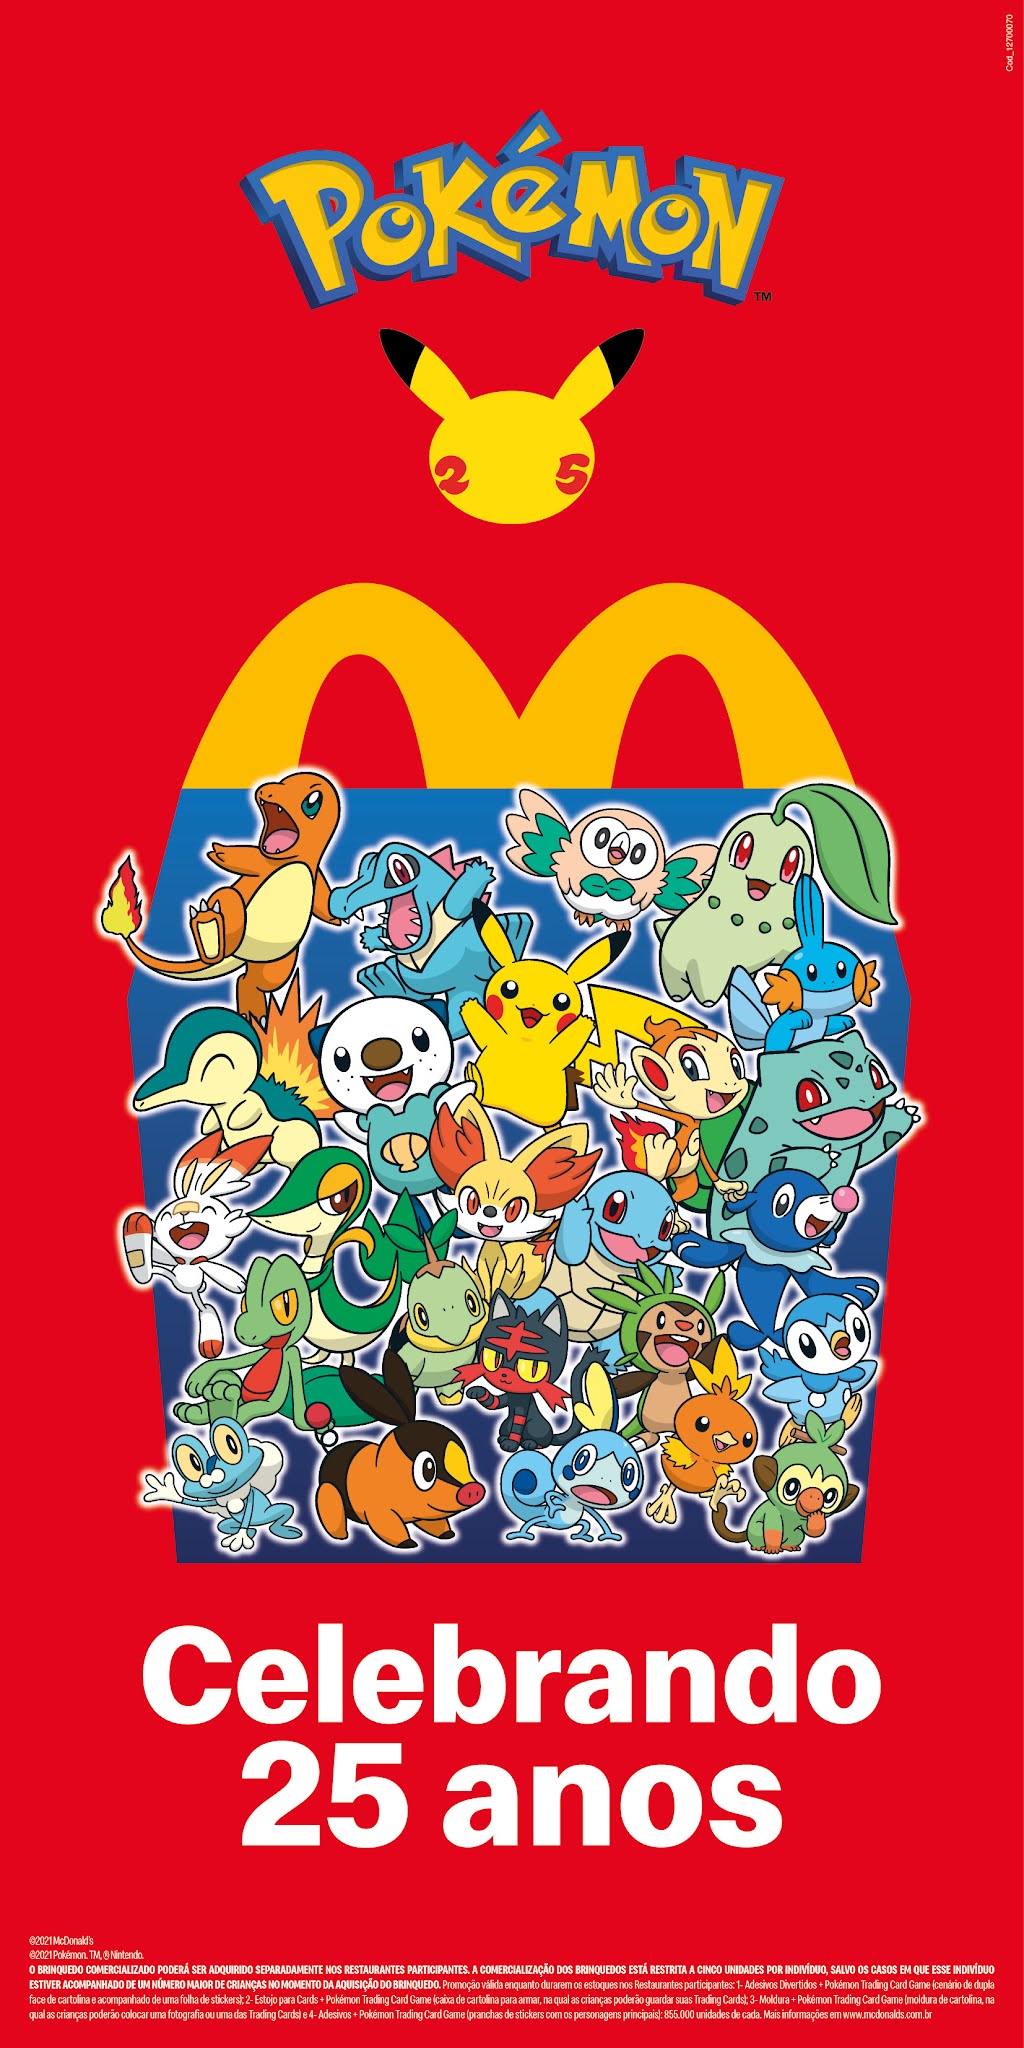 Pokémon retorna ao McLanche Feliz em primeira campanha de 2023 - Drops de  Jogos